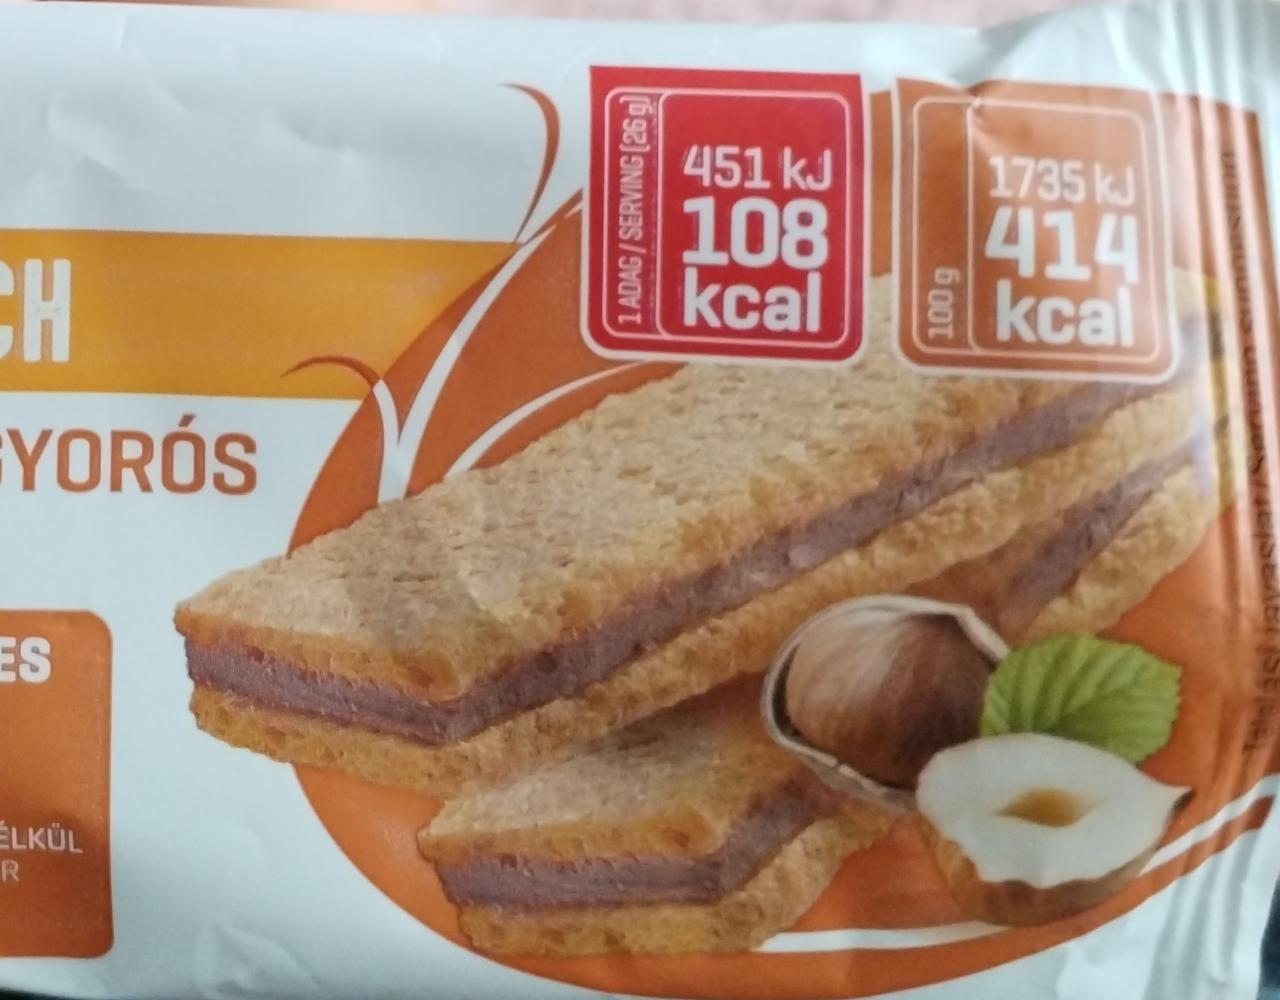 Képek - Gluténmentes, törökmogyorós szendvics édesítőszerrel, hozzáadott cukor nélkül Abonett